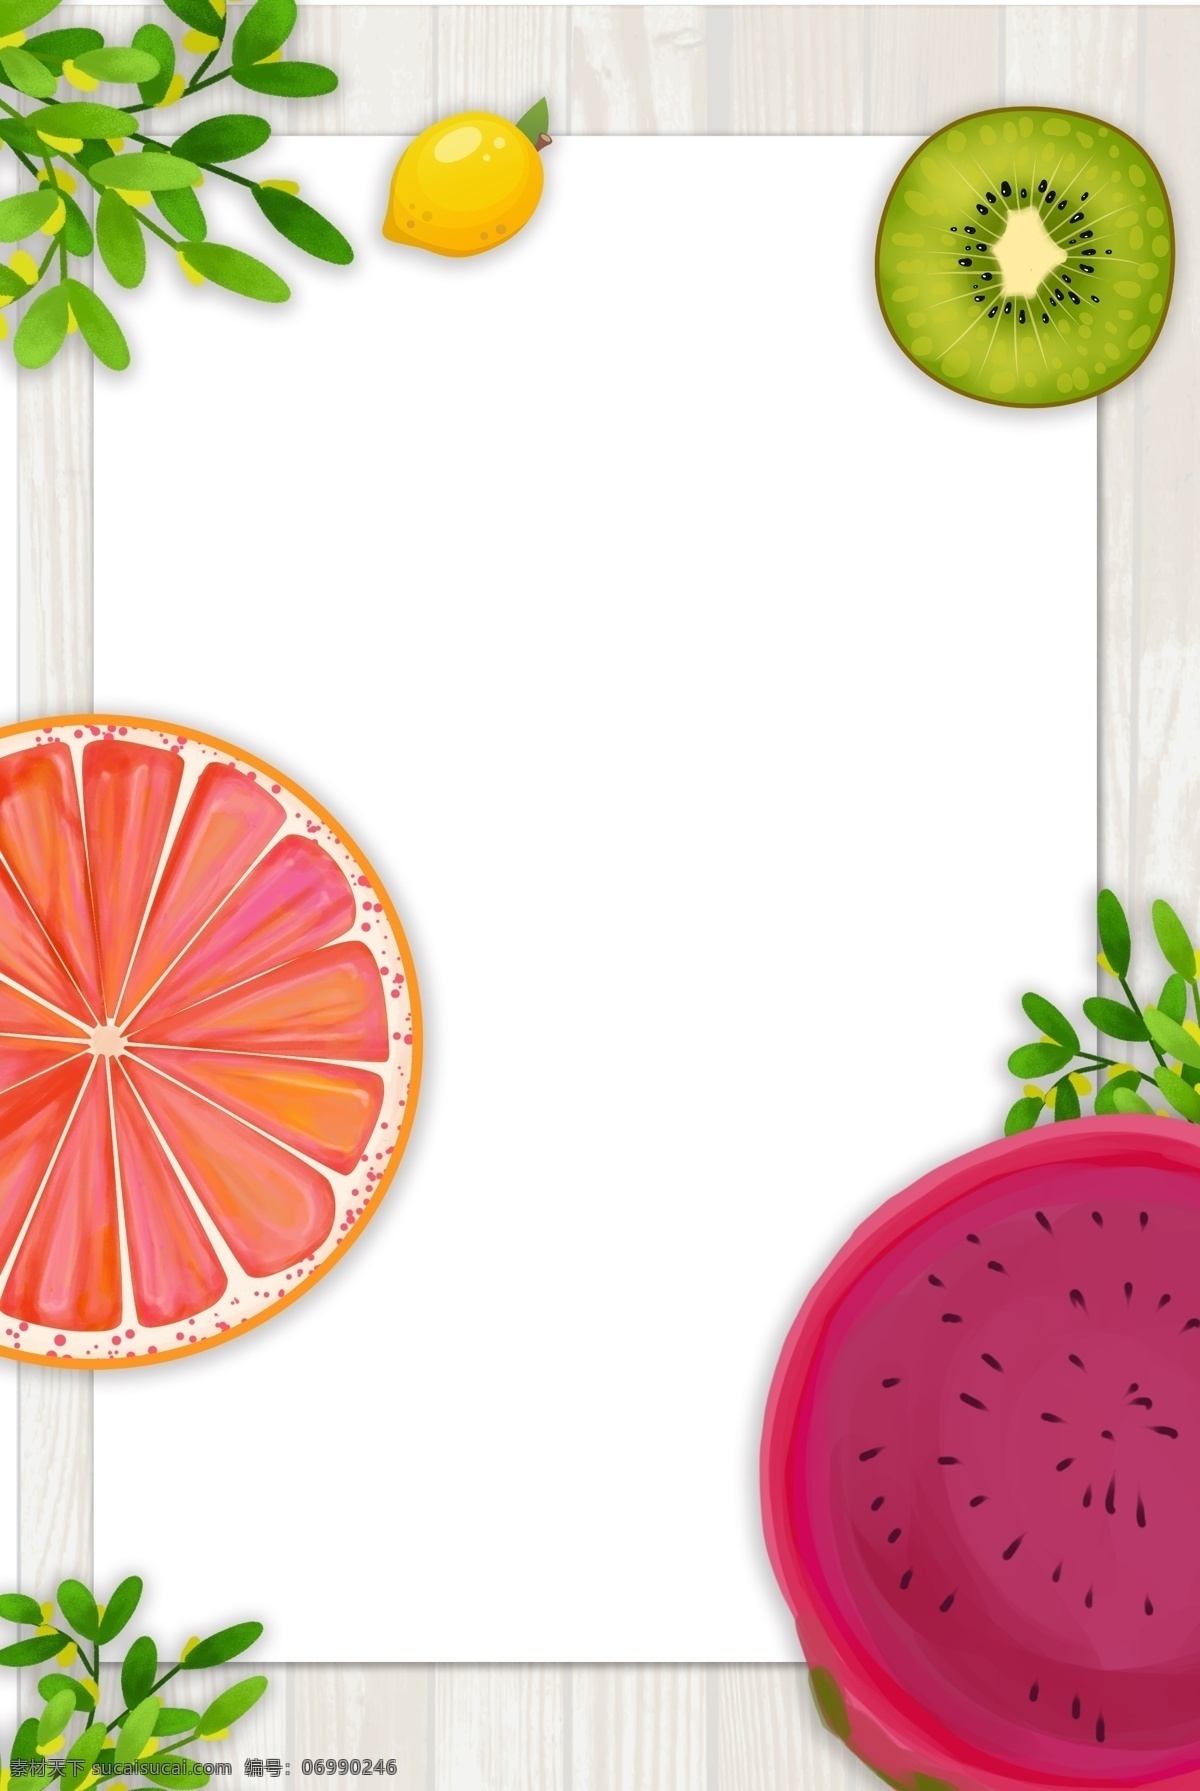 水果背景 水果素材 水果纹理 创意水果 清新背景 创意血橙 新鲜血橙 猕猴桃背景 猕猴桃纹理